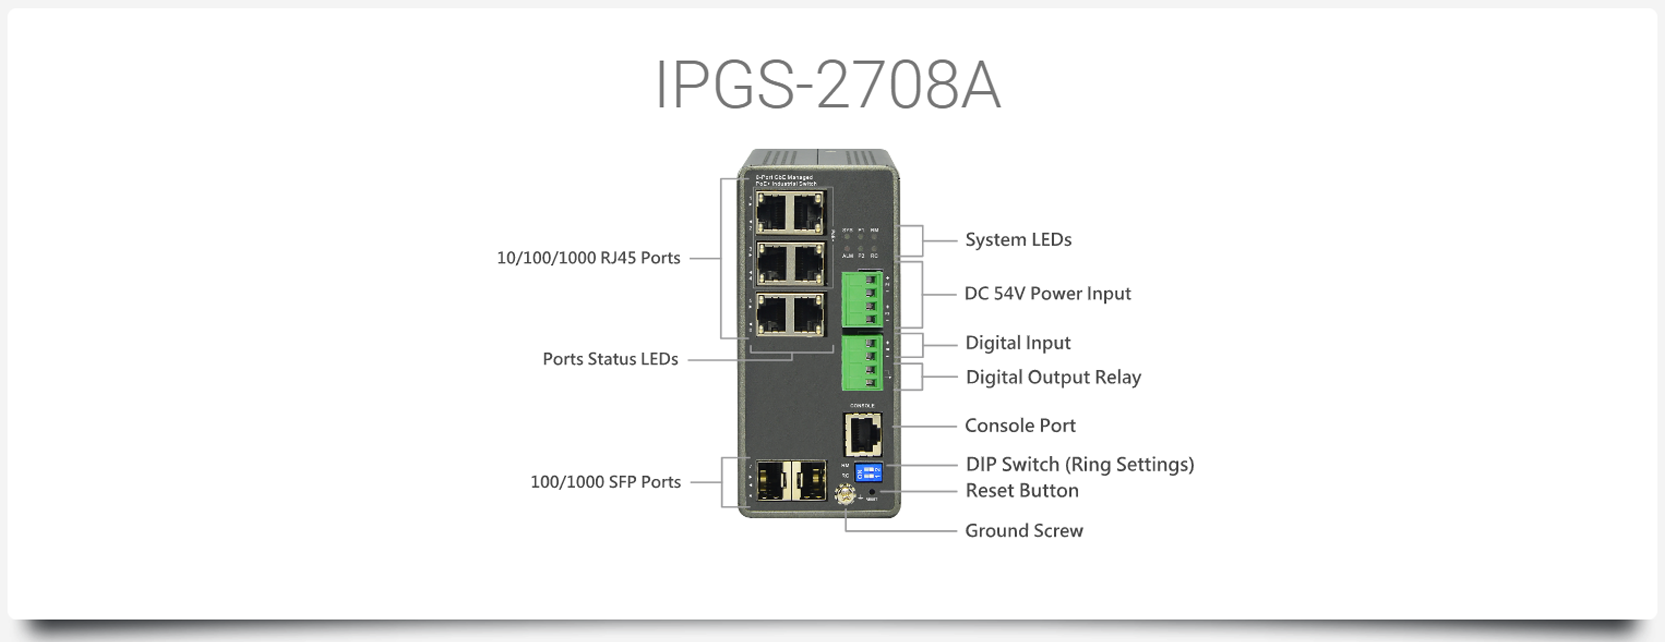 IPGS-2708A